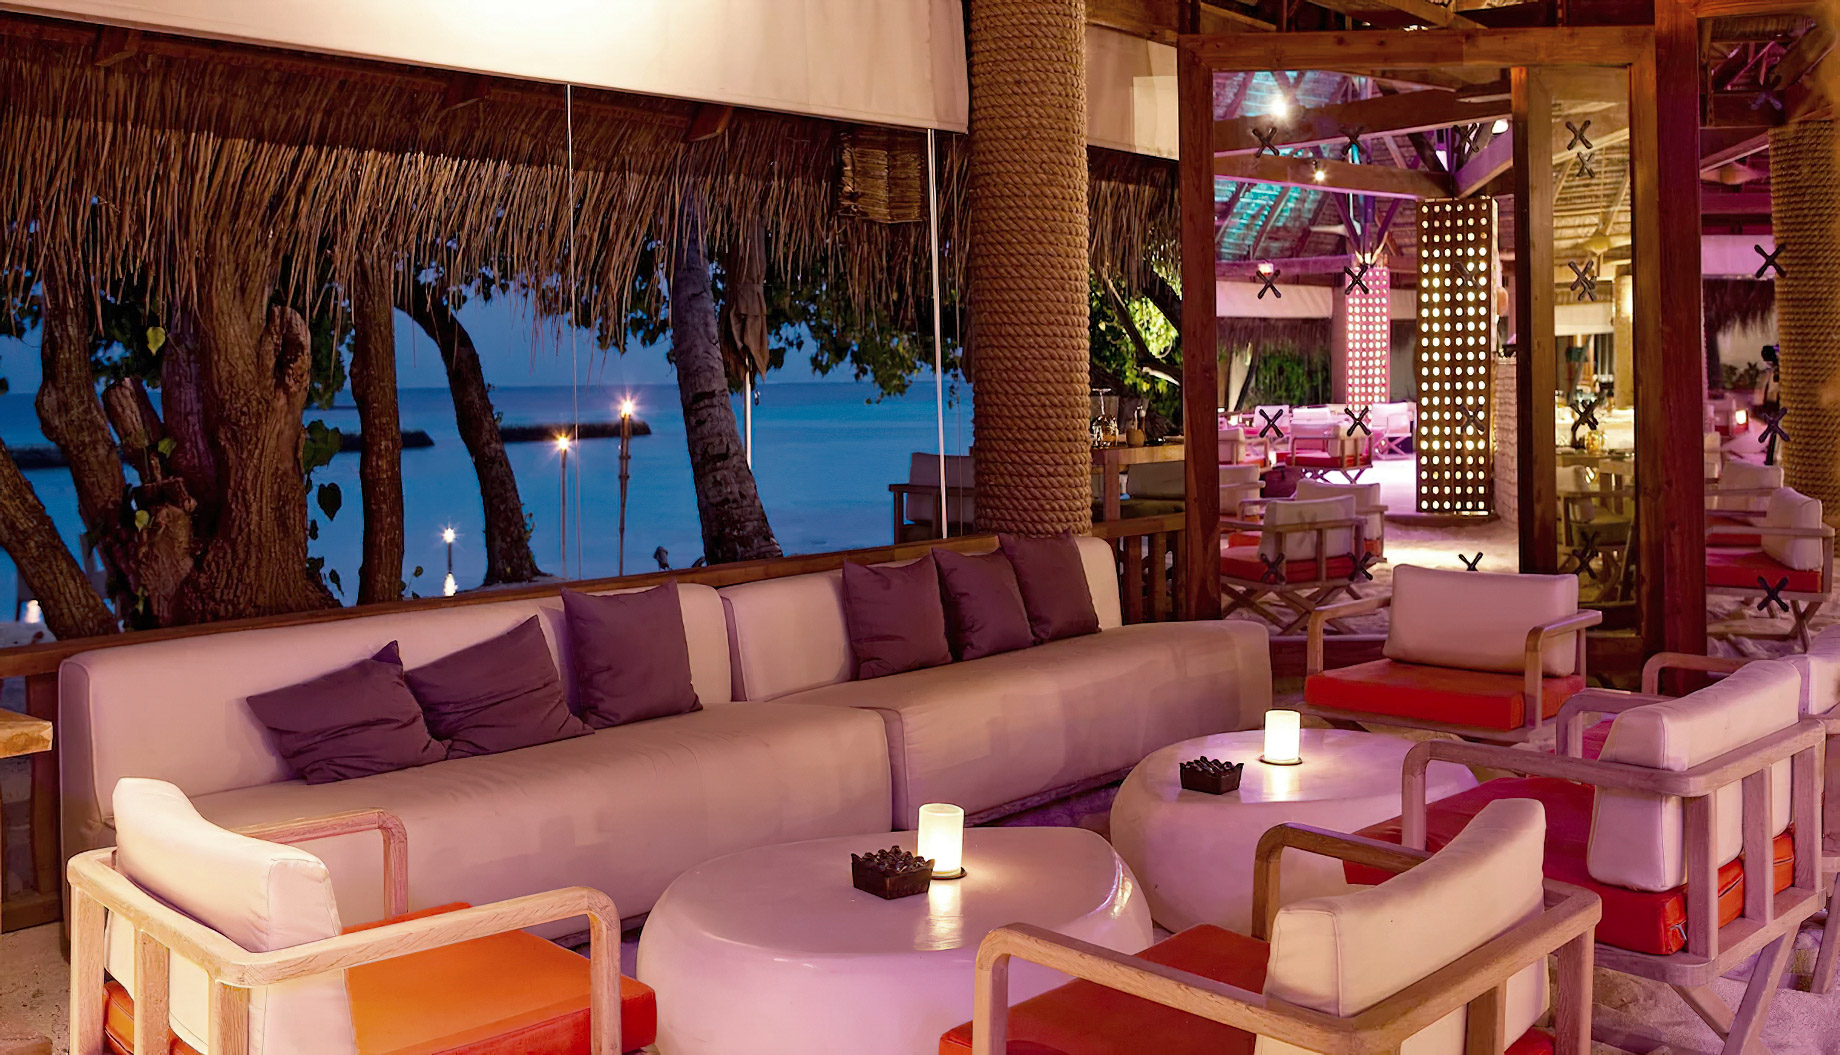 Constance Moofushi Resort – South Ari Atoll, Maldives – Manta Restaurant Bar Lounge